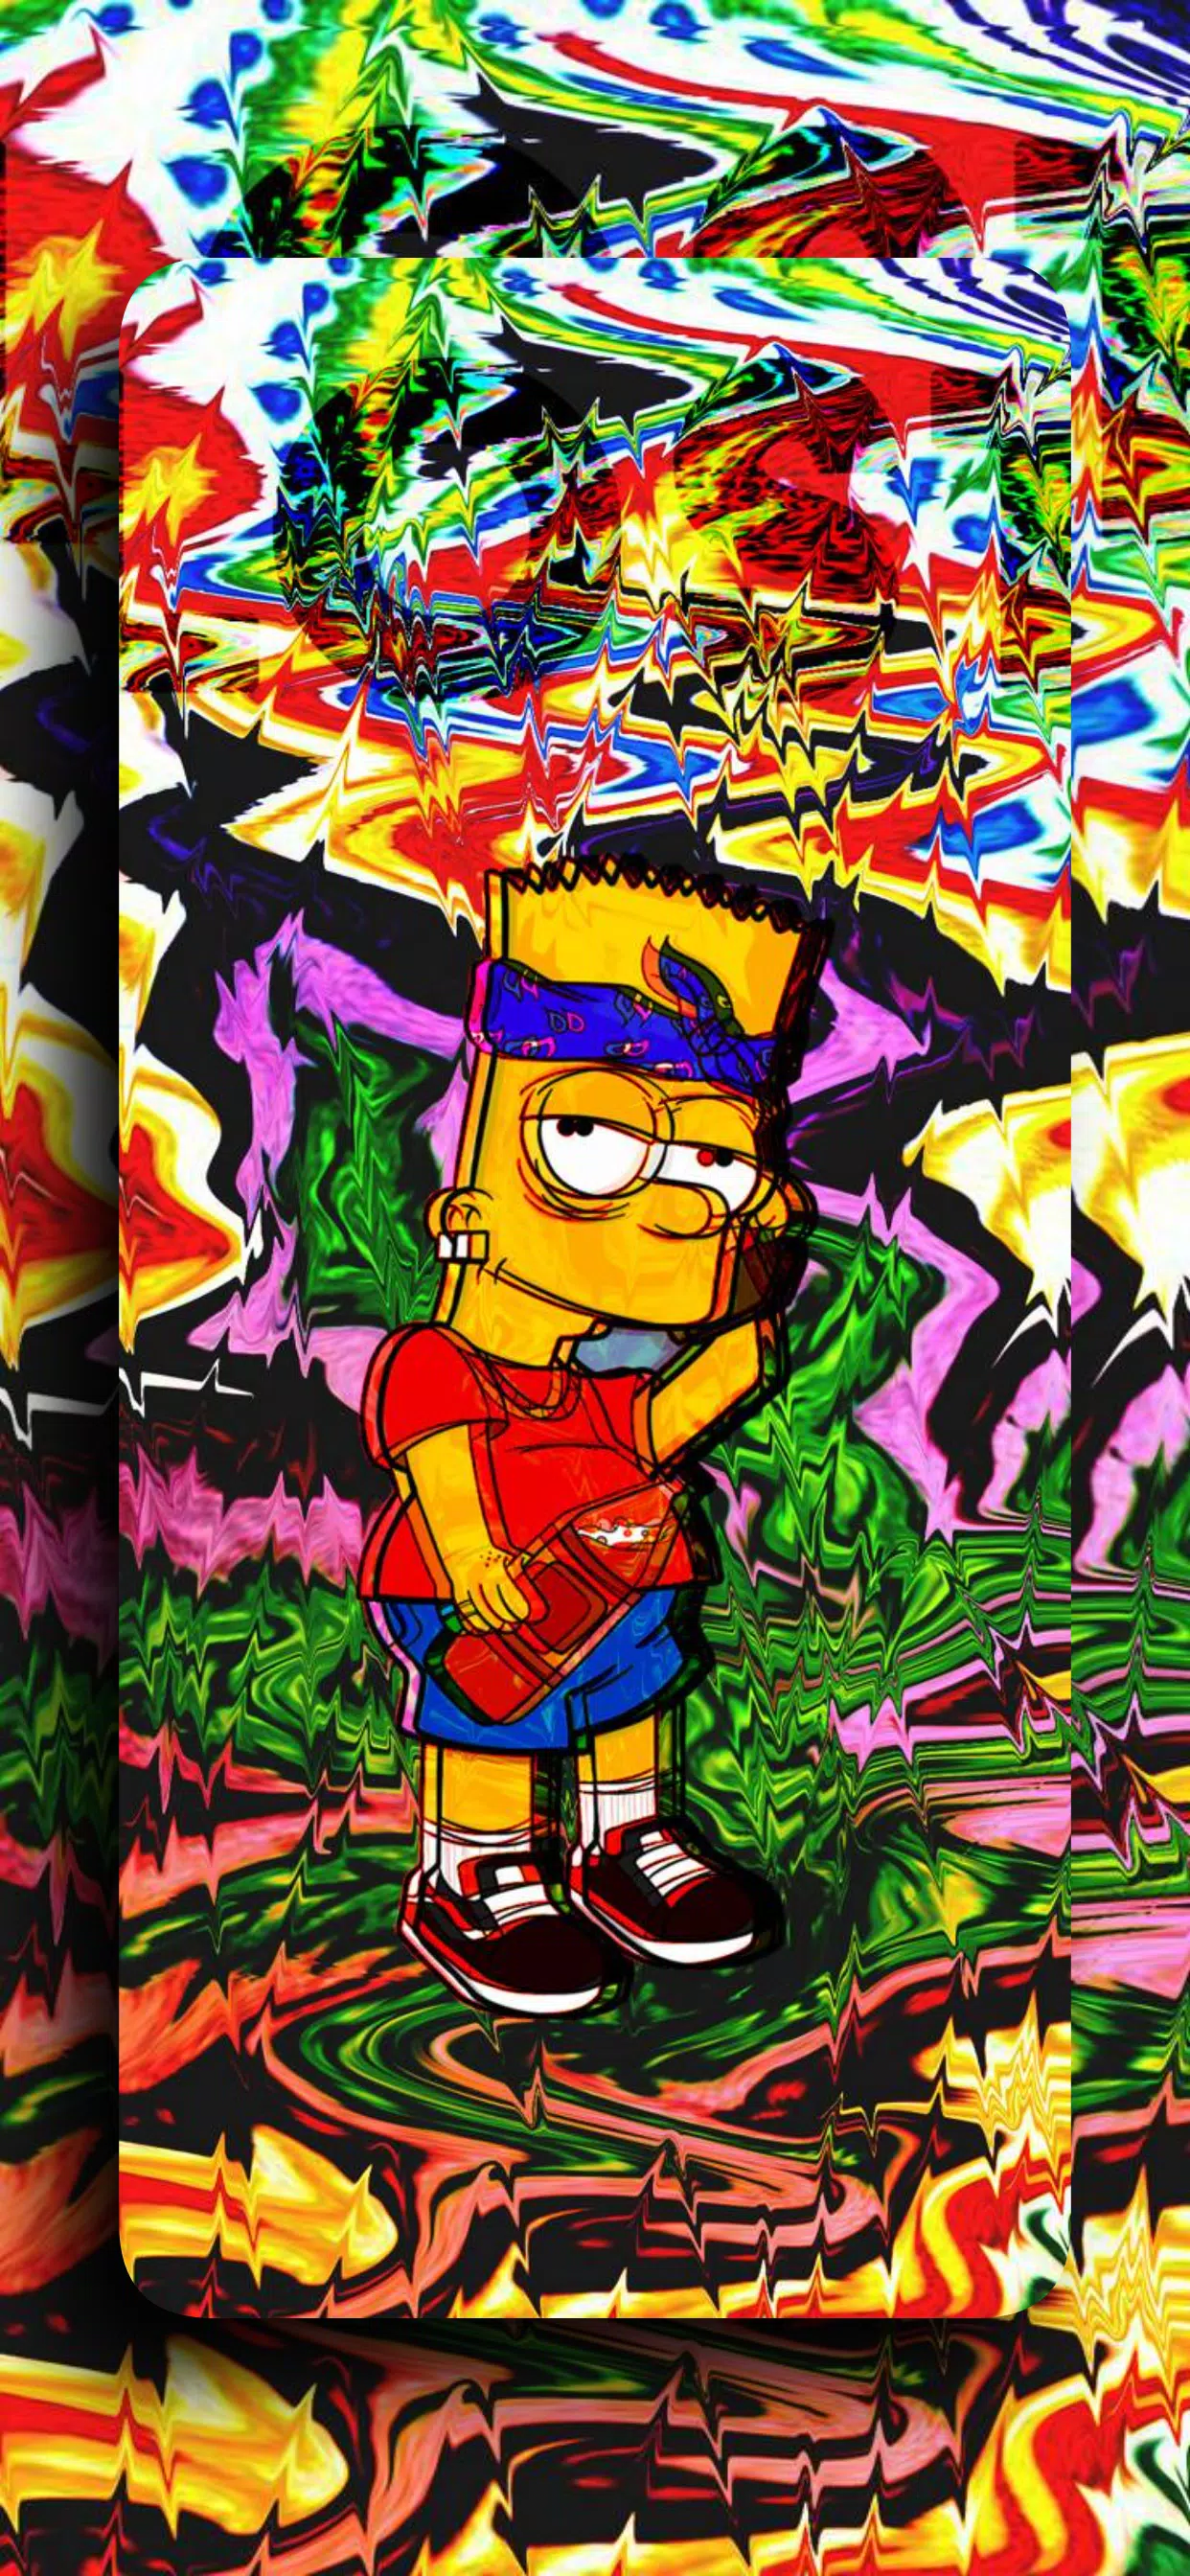 Papéis de parede do Bart para celular - Papel de parede